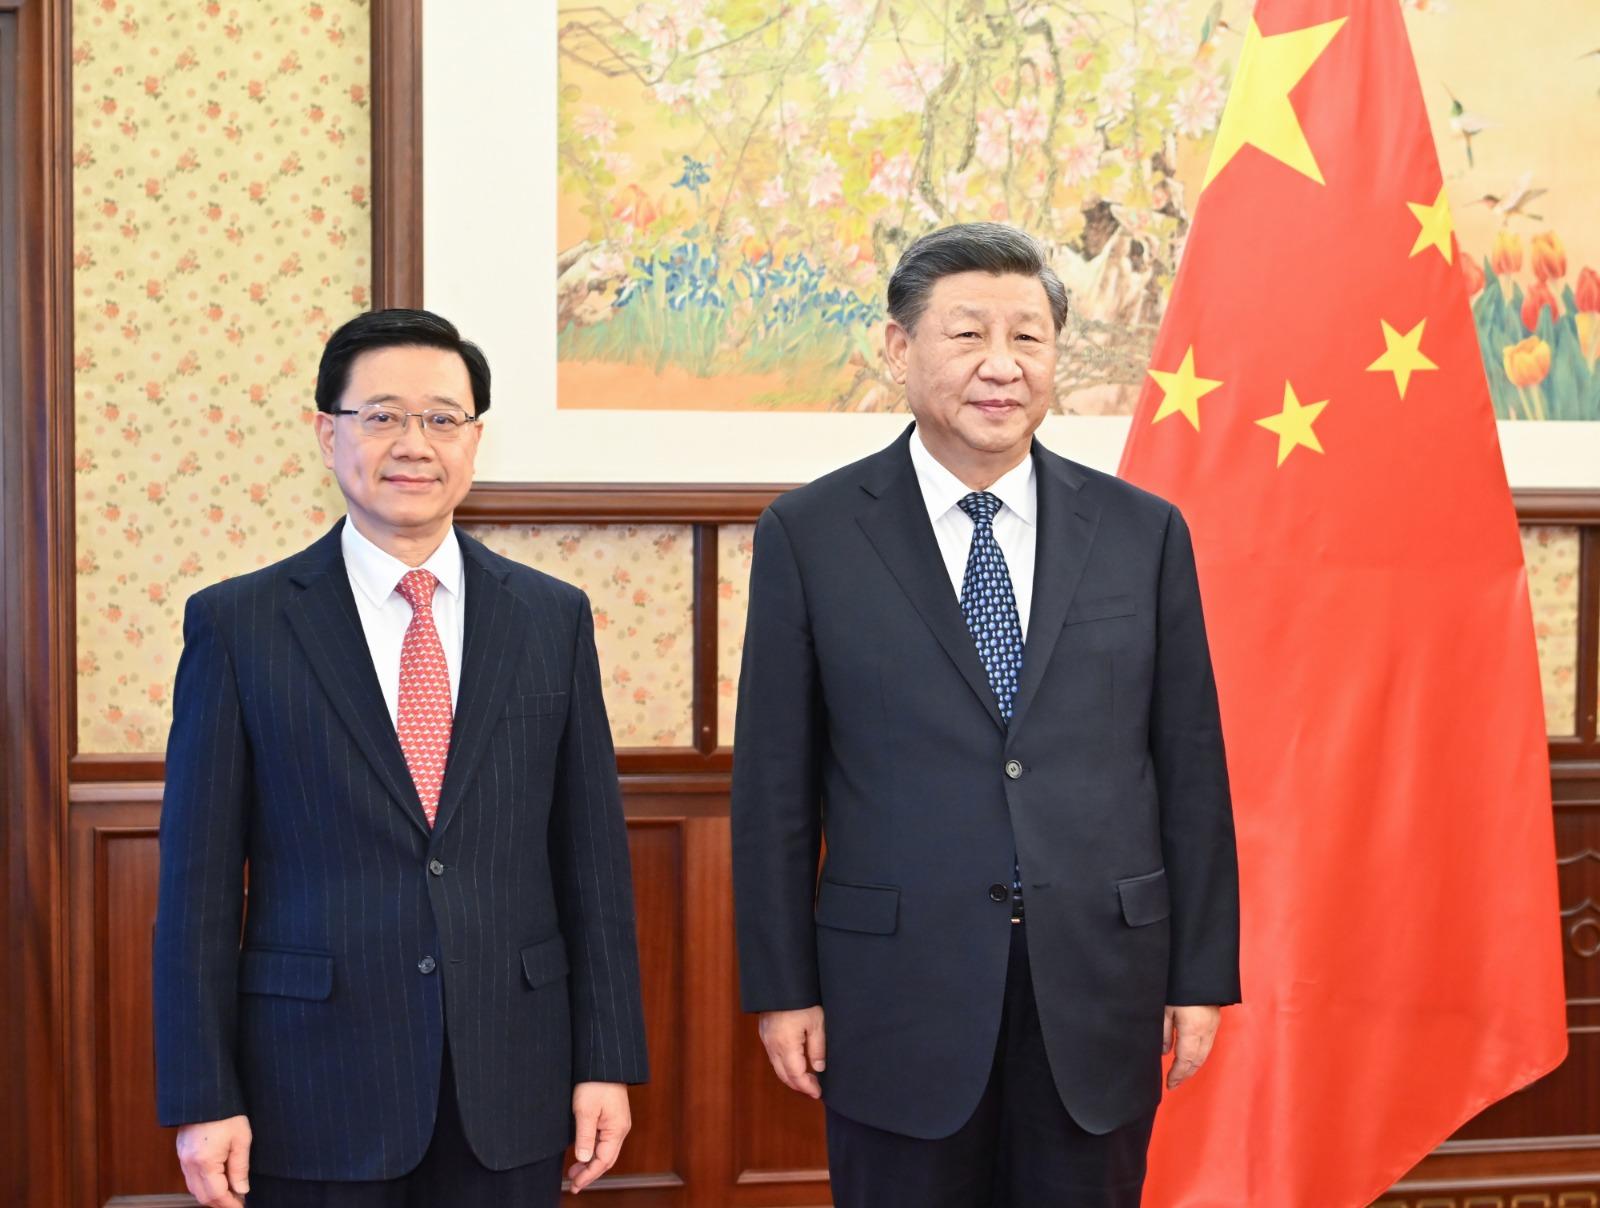 行政长官李家超（左）今日（十二月二十三日）在北京向国家主席习近平述职，汇报香港经济、社会和政治等方面的最新情况。图示二人在会面前合照。